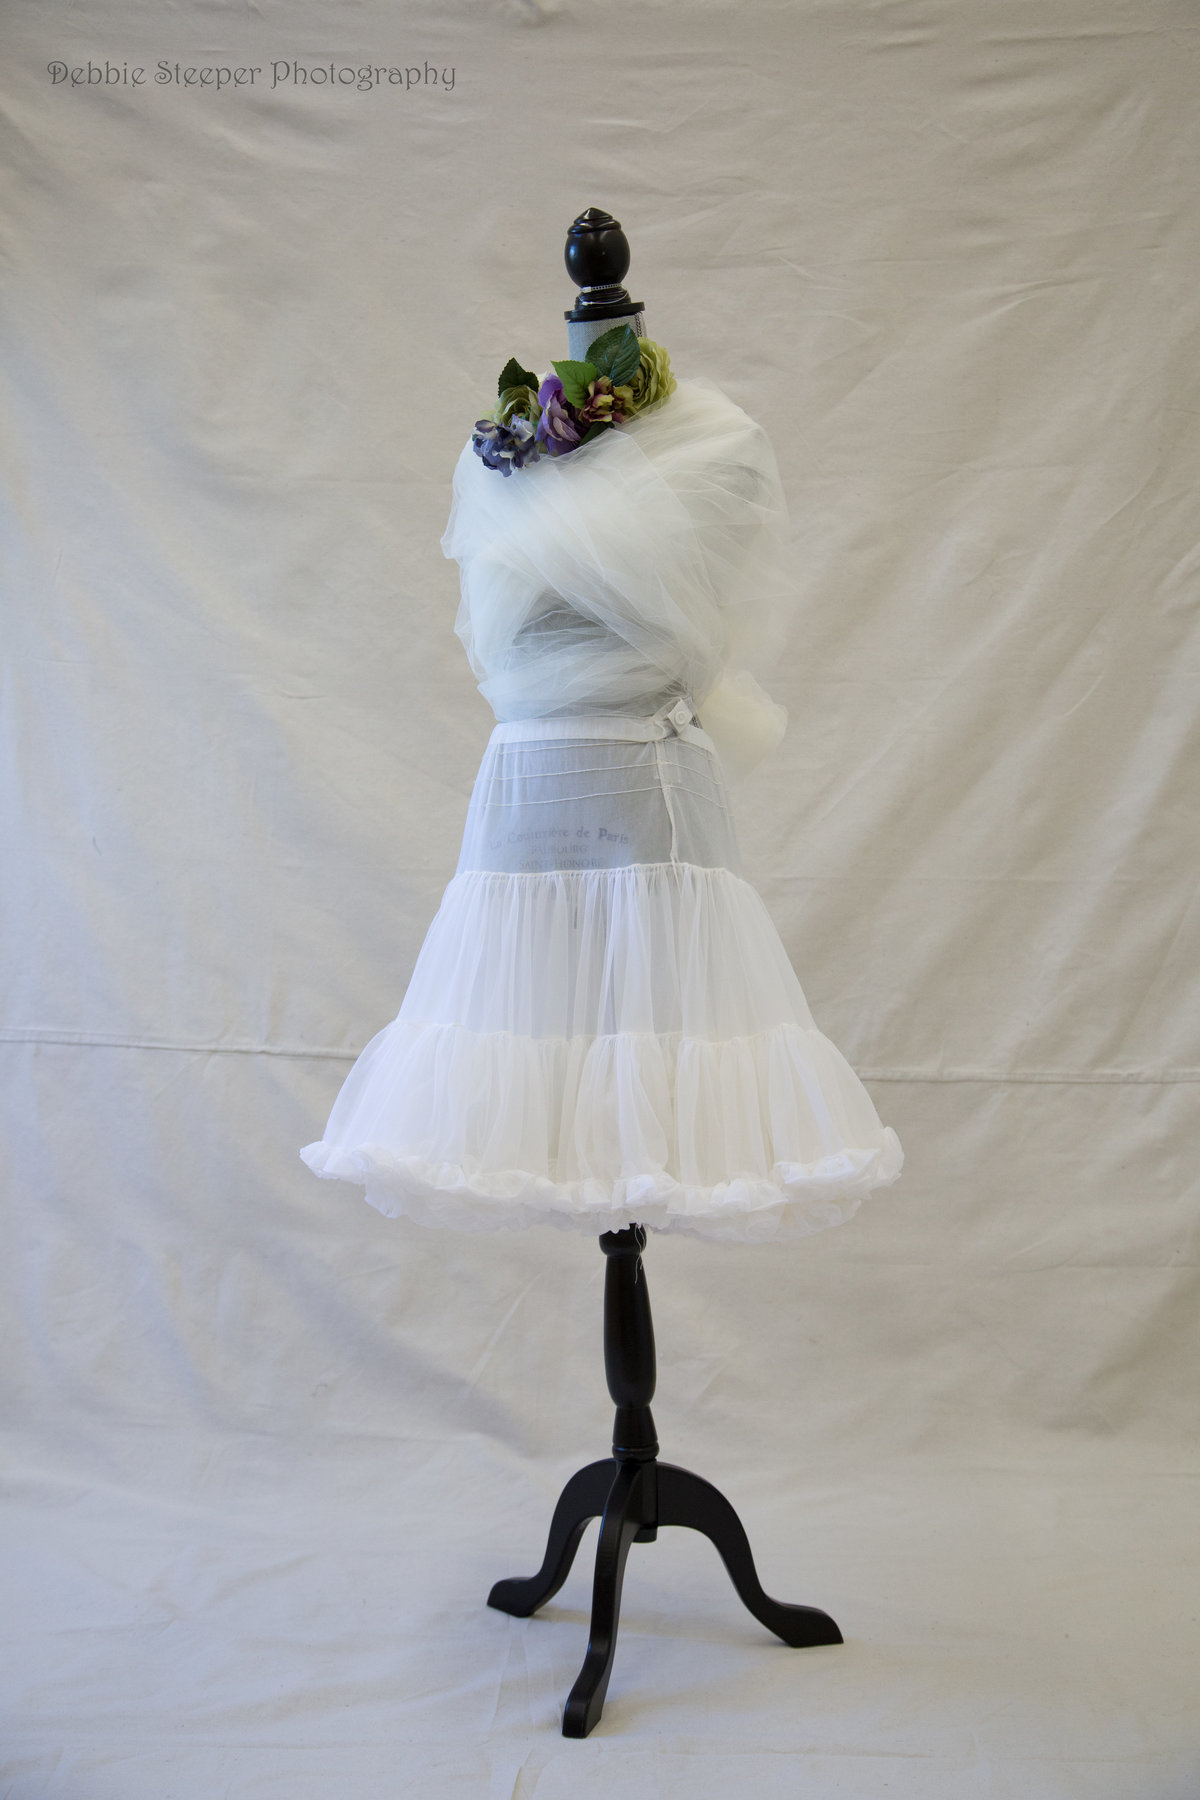 designer dresss, handmade with tulle